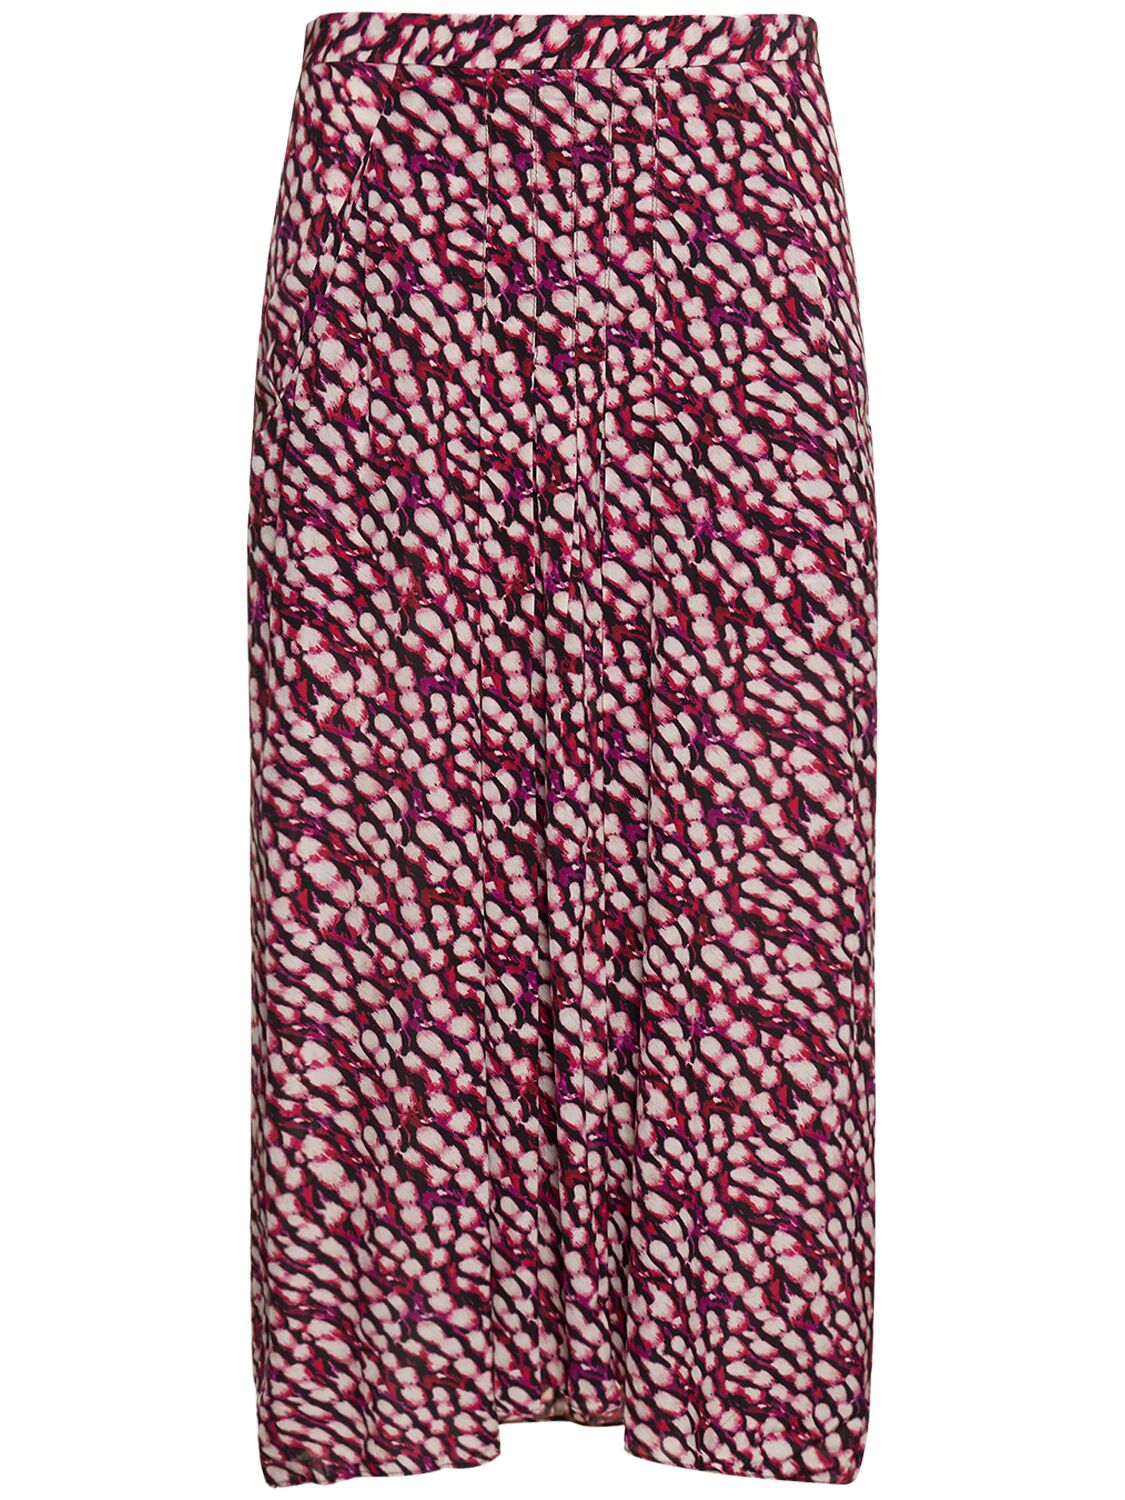 Marant Etoile Eolia Printed Viscose Long Skirt In Multi Fuchsia